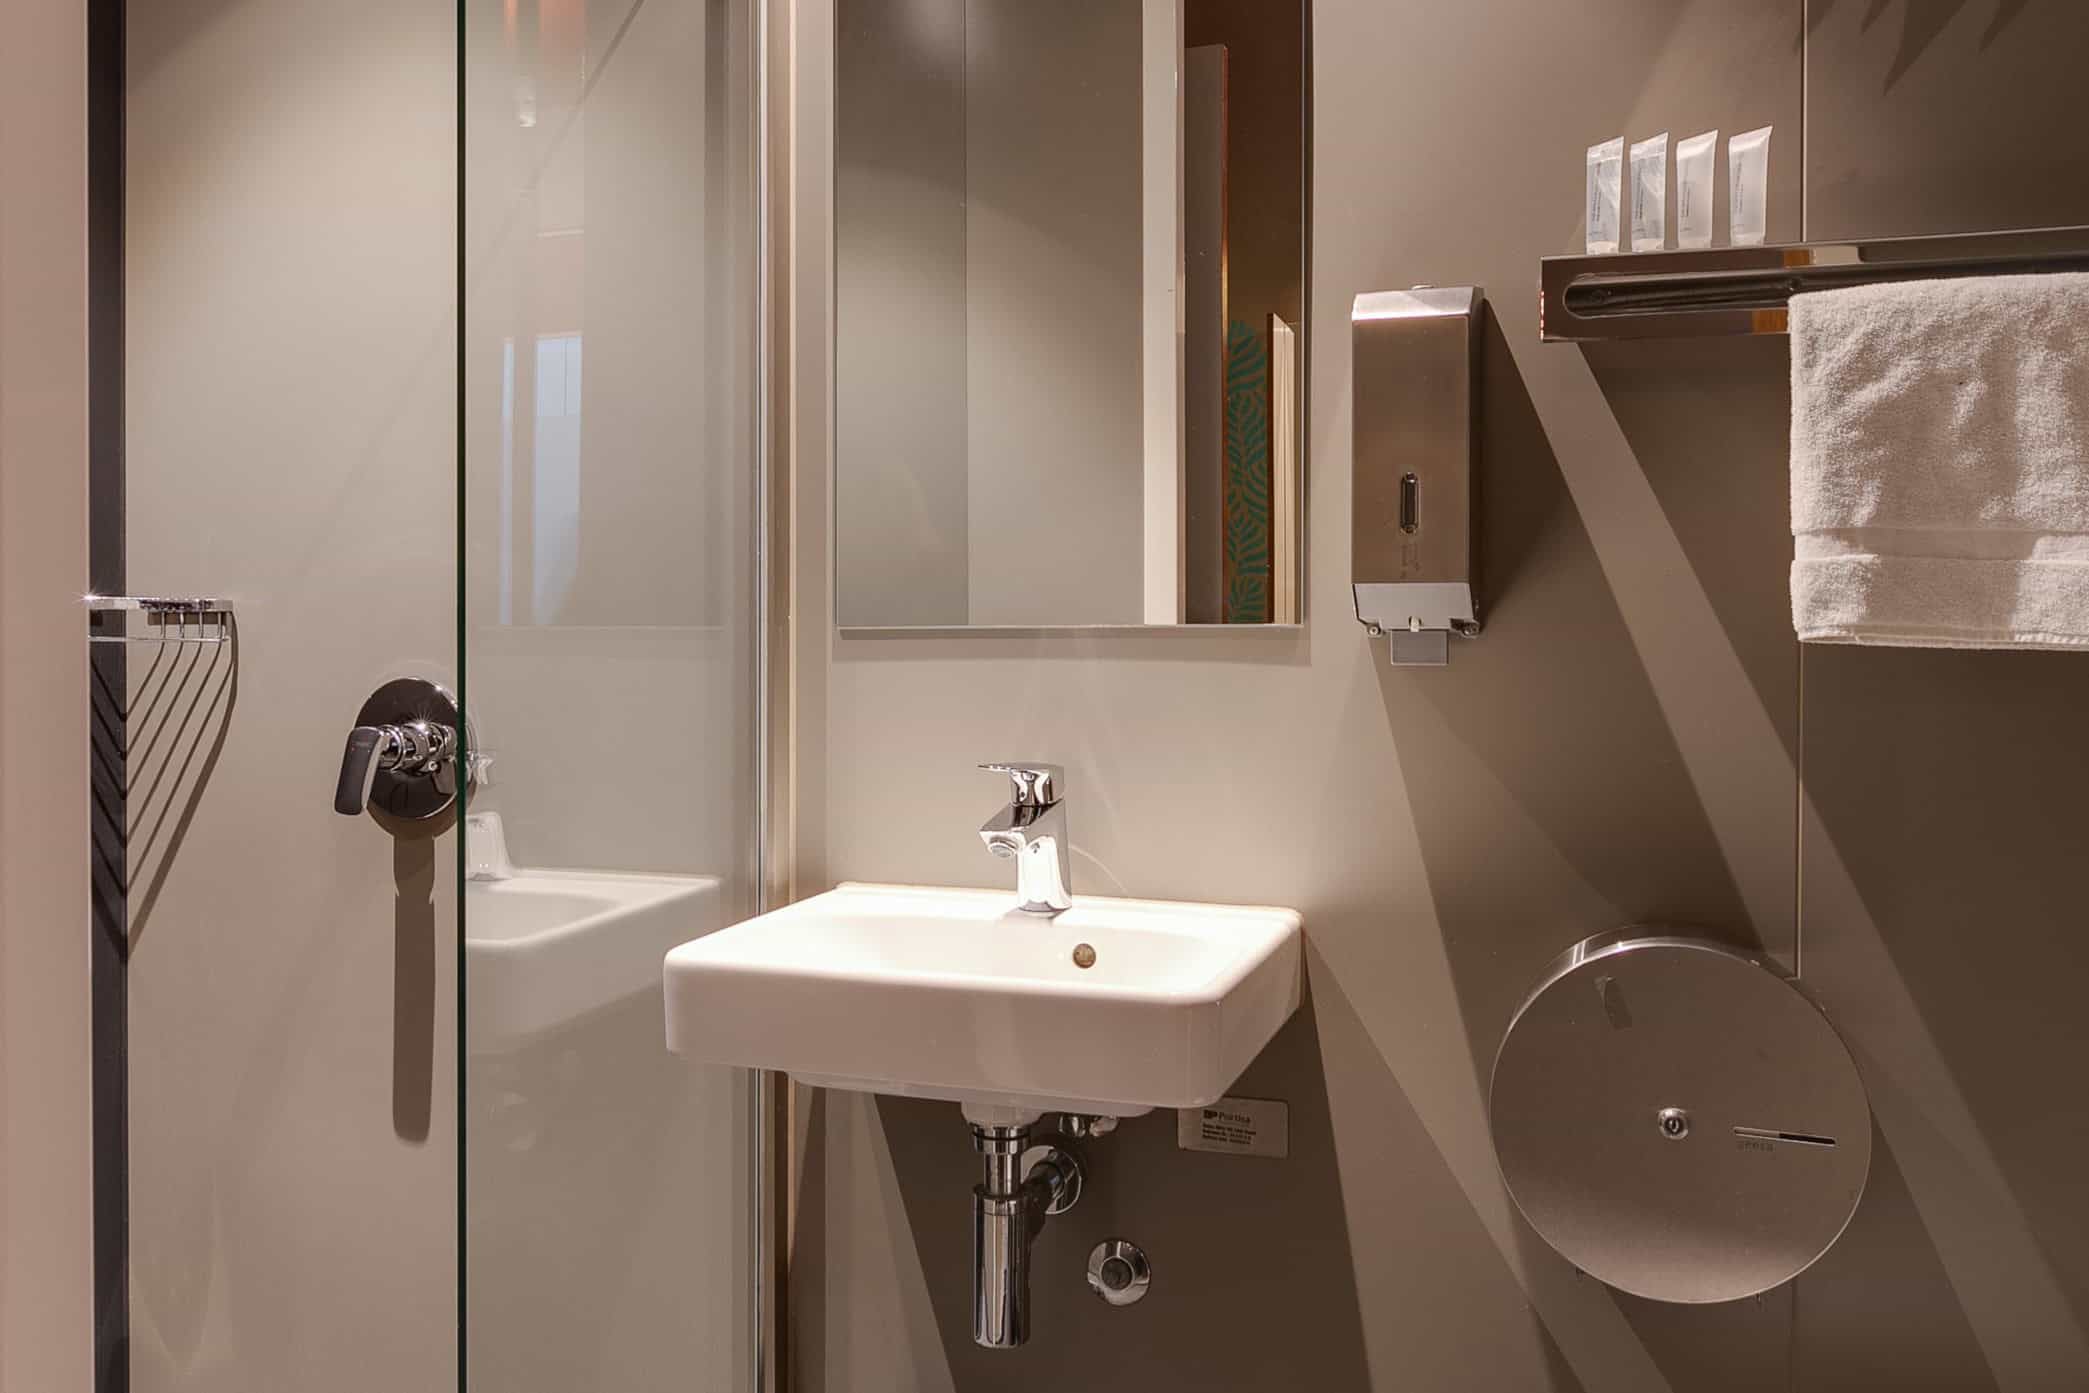 Dorm room en-suite bathroom and shower at Clinknoord Amsterdam